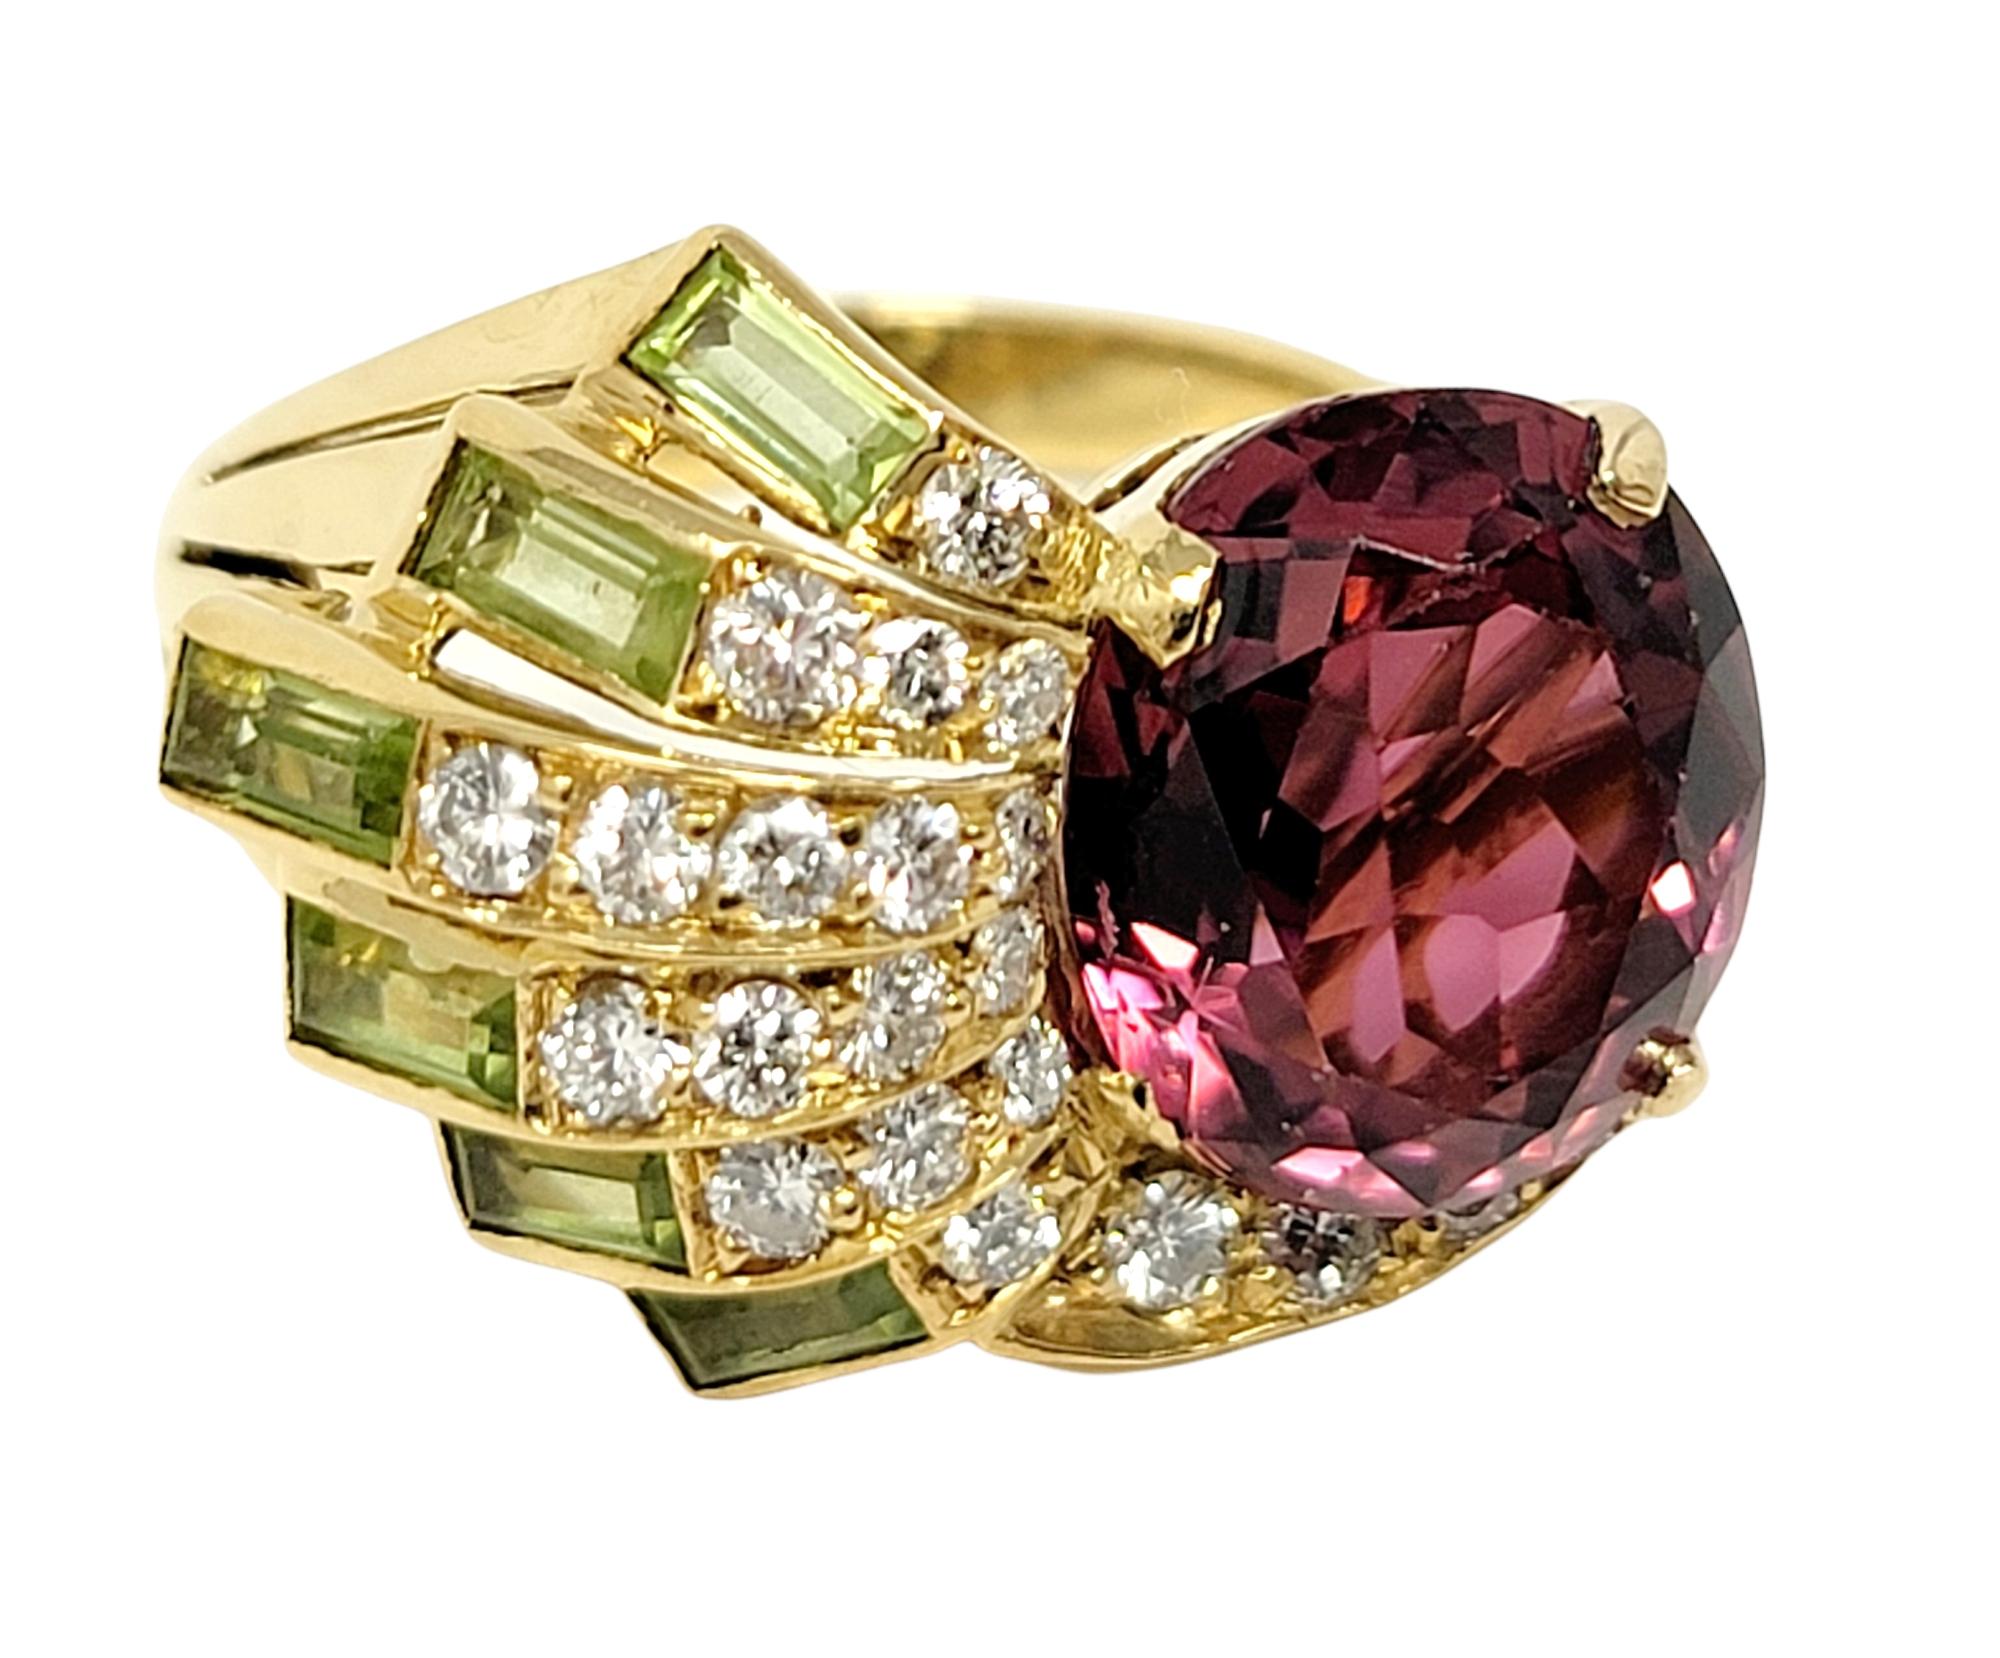 pink tourmaline and peridot ring